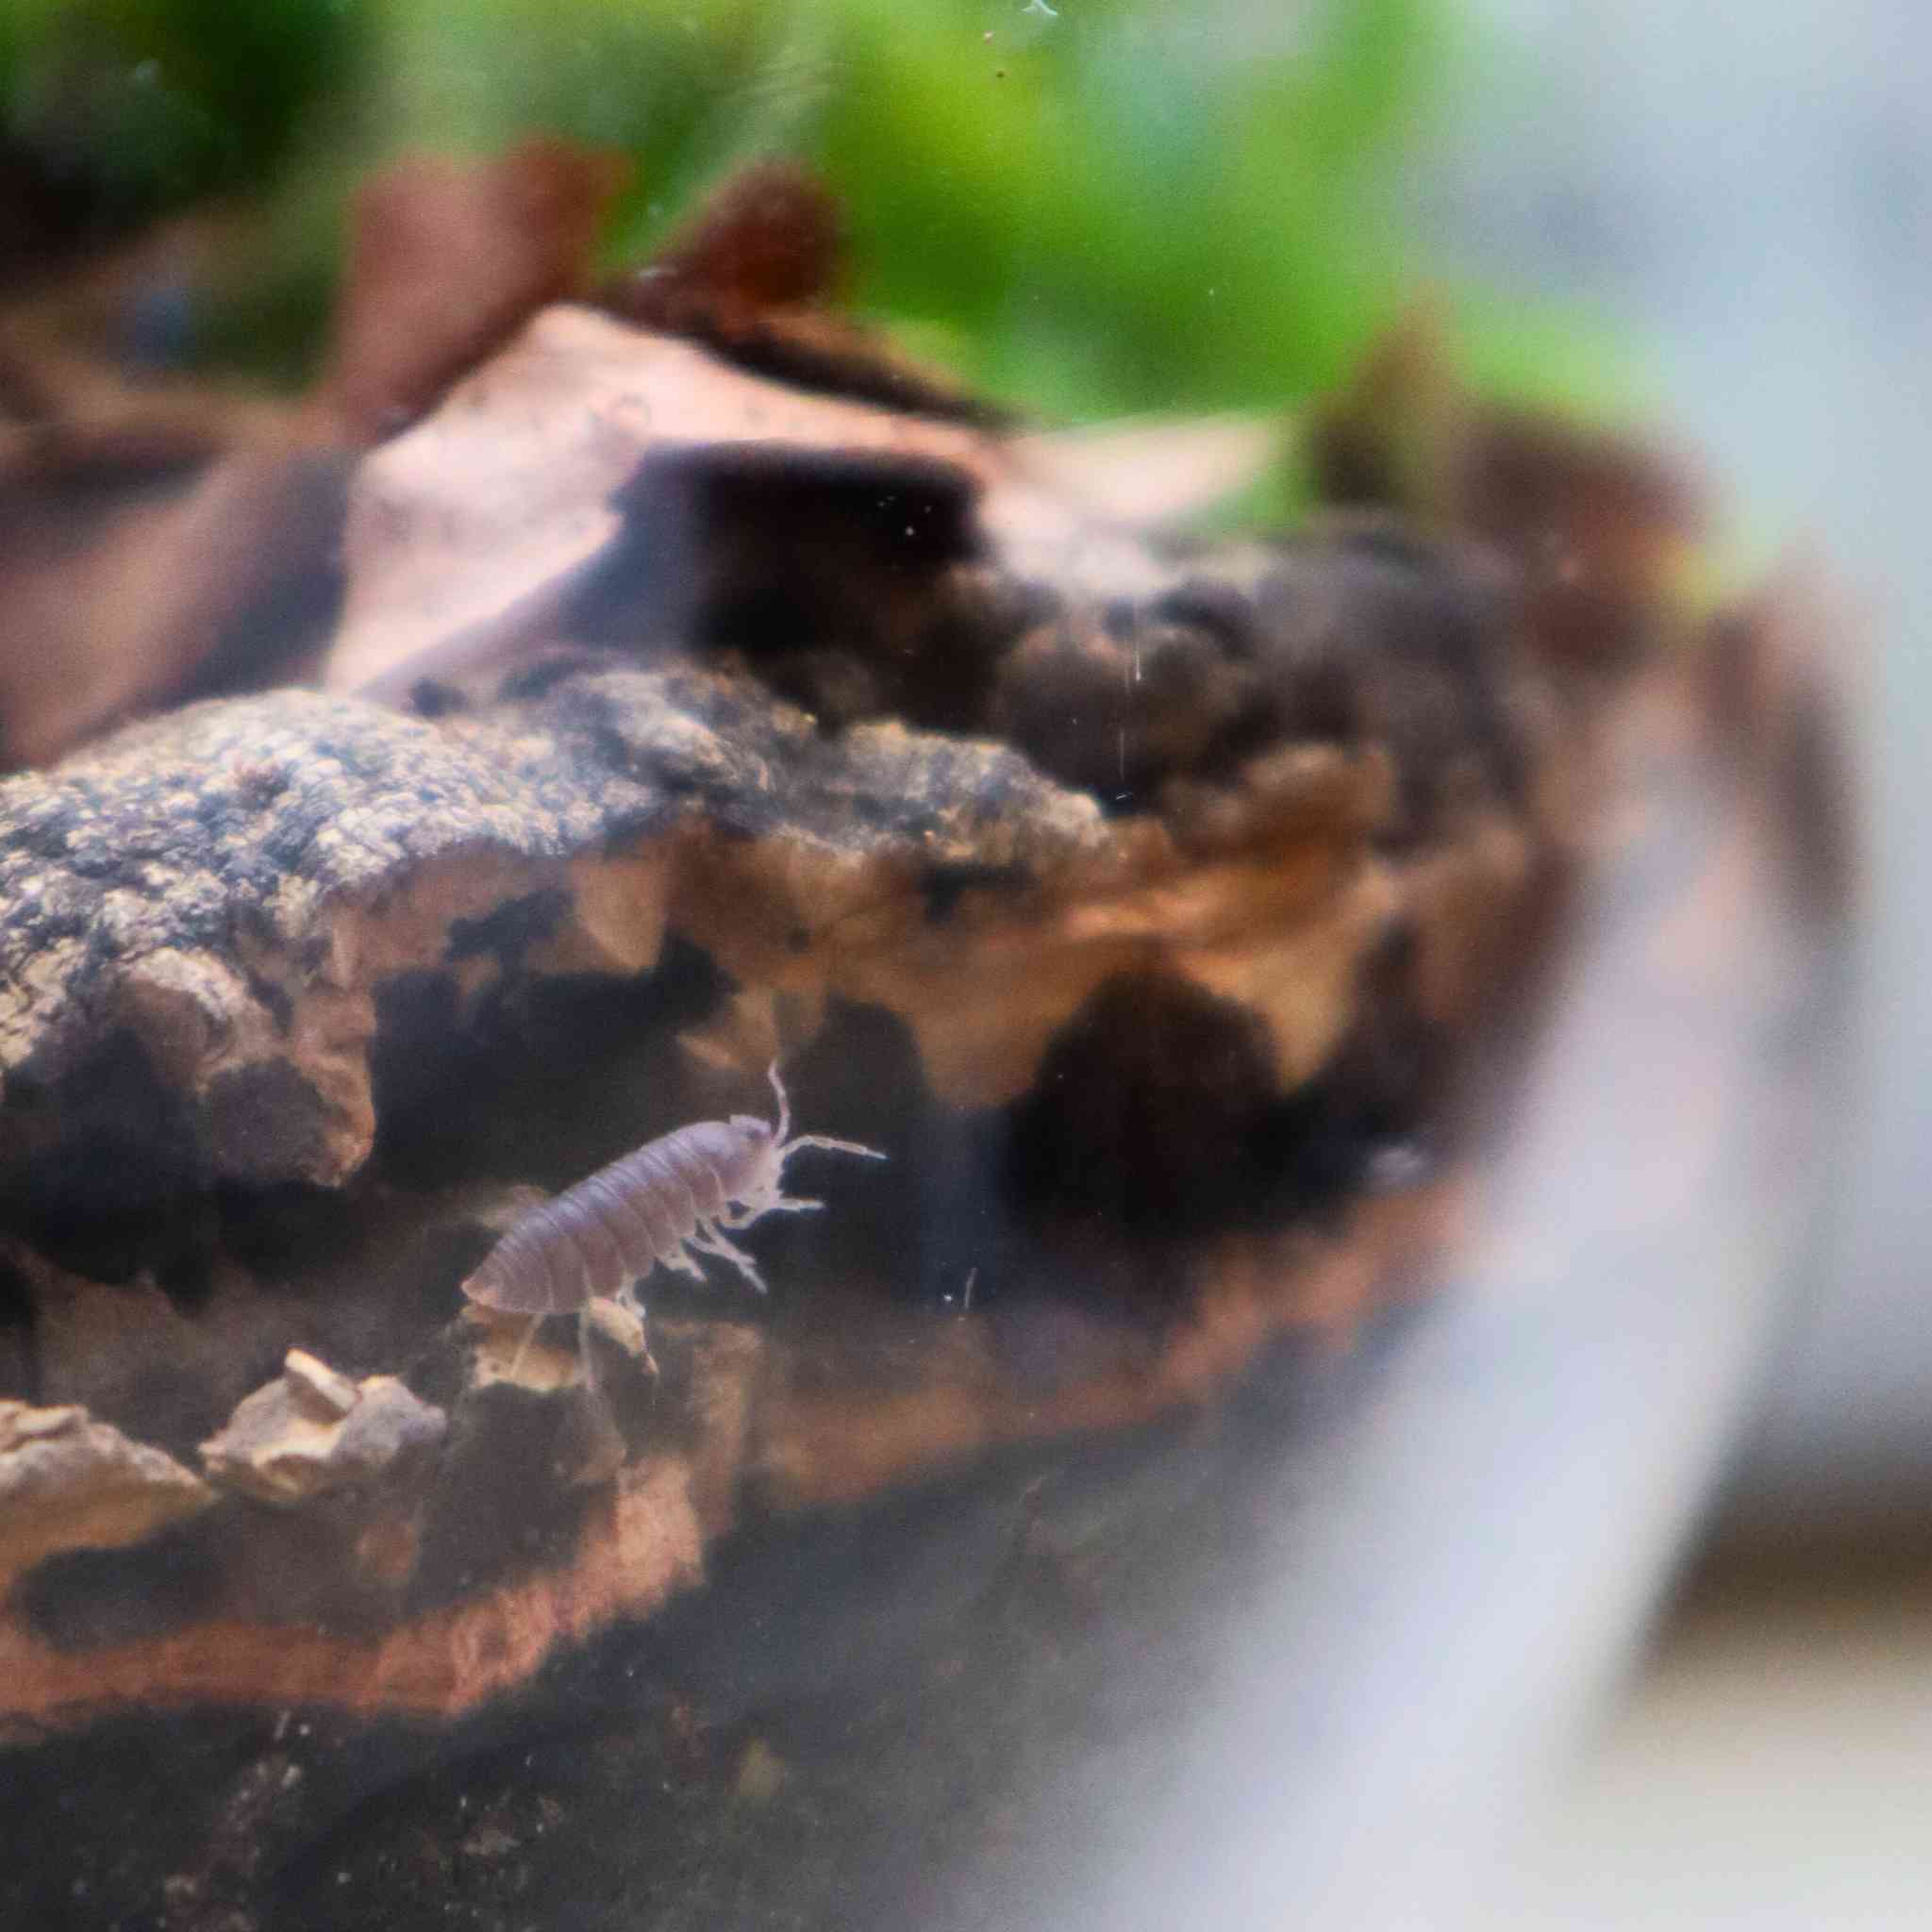 cubaris murina isopod in terrarium